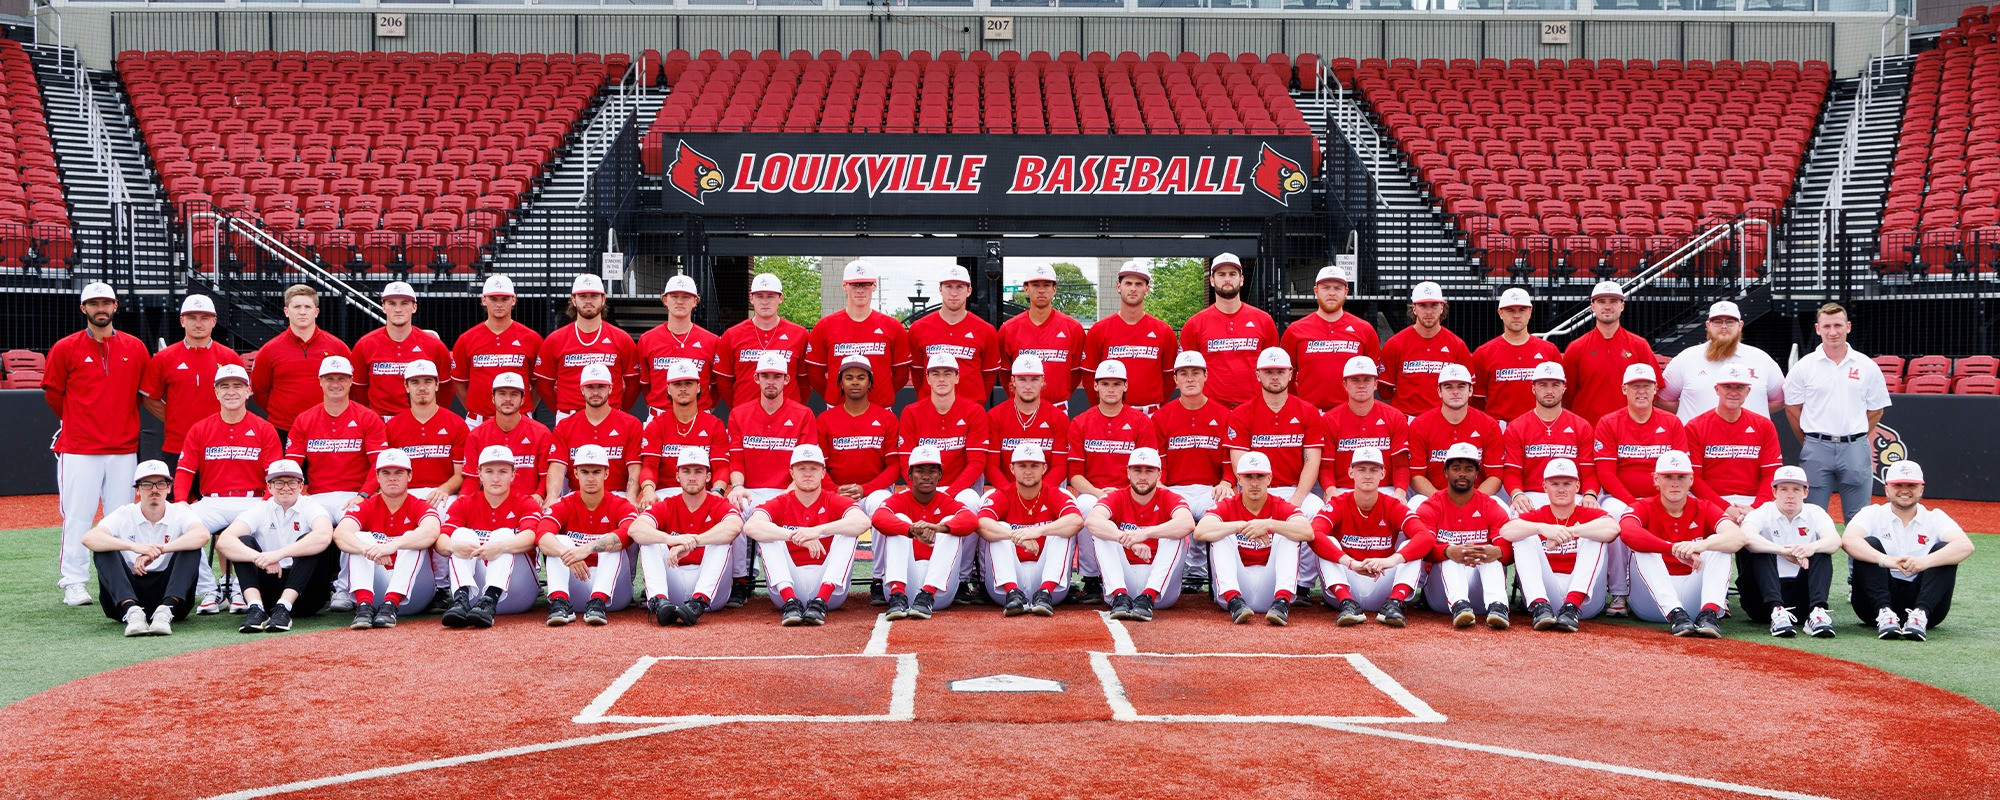 University of Louisville Baseball - 𝕿𝖍𝖊 𝕲𝖗𝖊𝖆𝖙𝖊𝖘𝖙 uni in